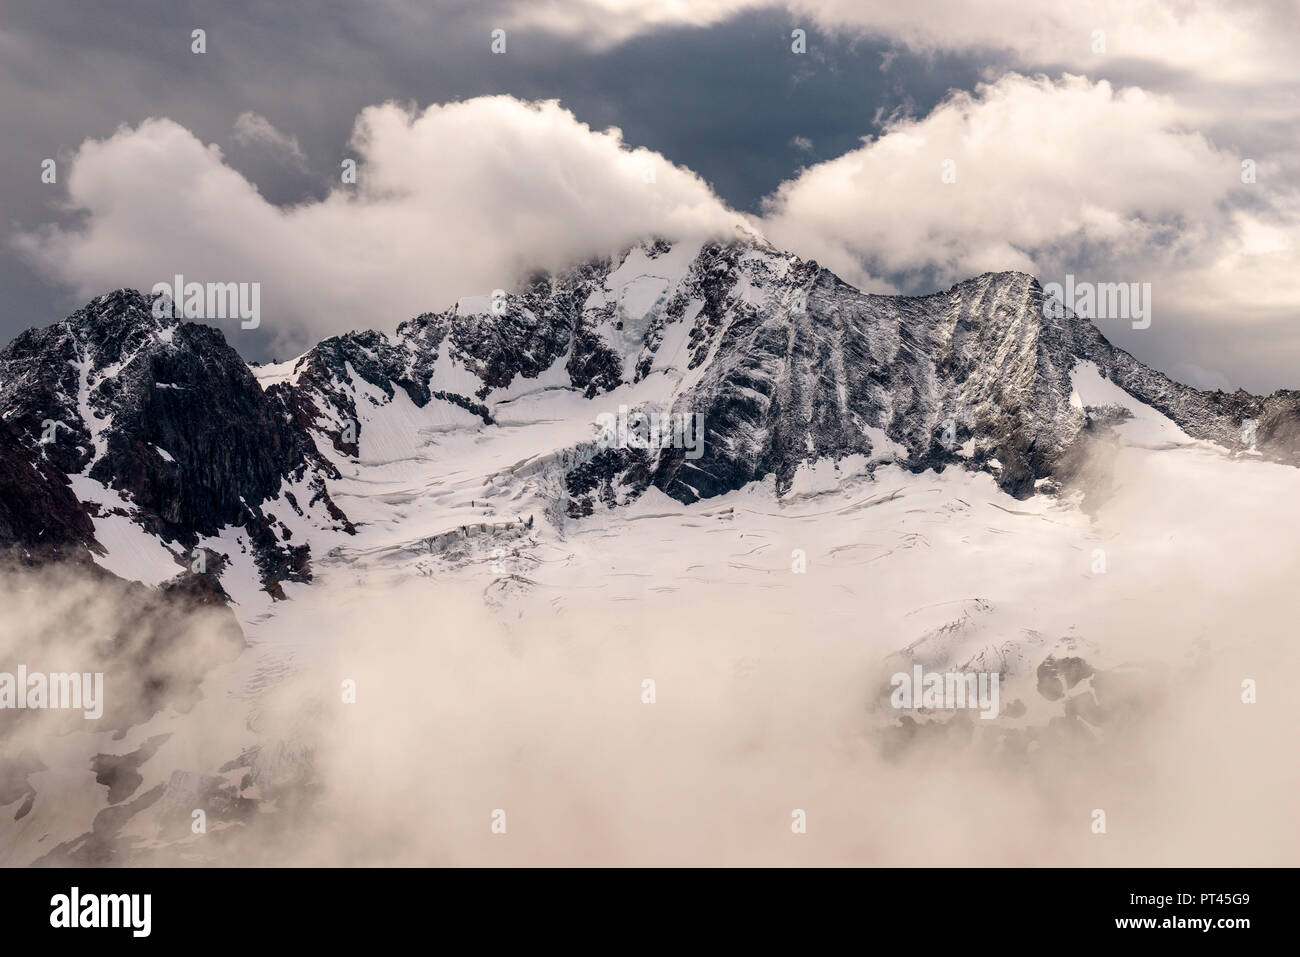 The North Face of Mount Disgrazia, Chiareggio, Valmalenco, Province of Sondrio, Lombardy, Italy Stock Photo